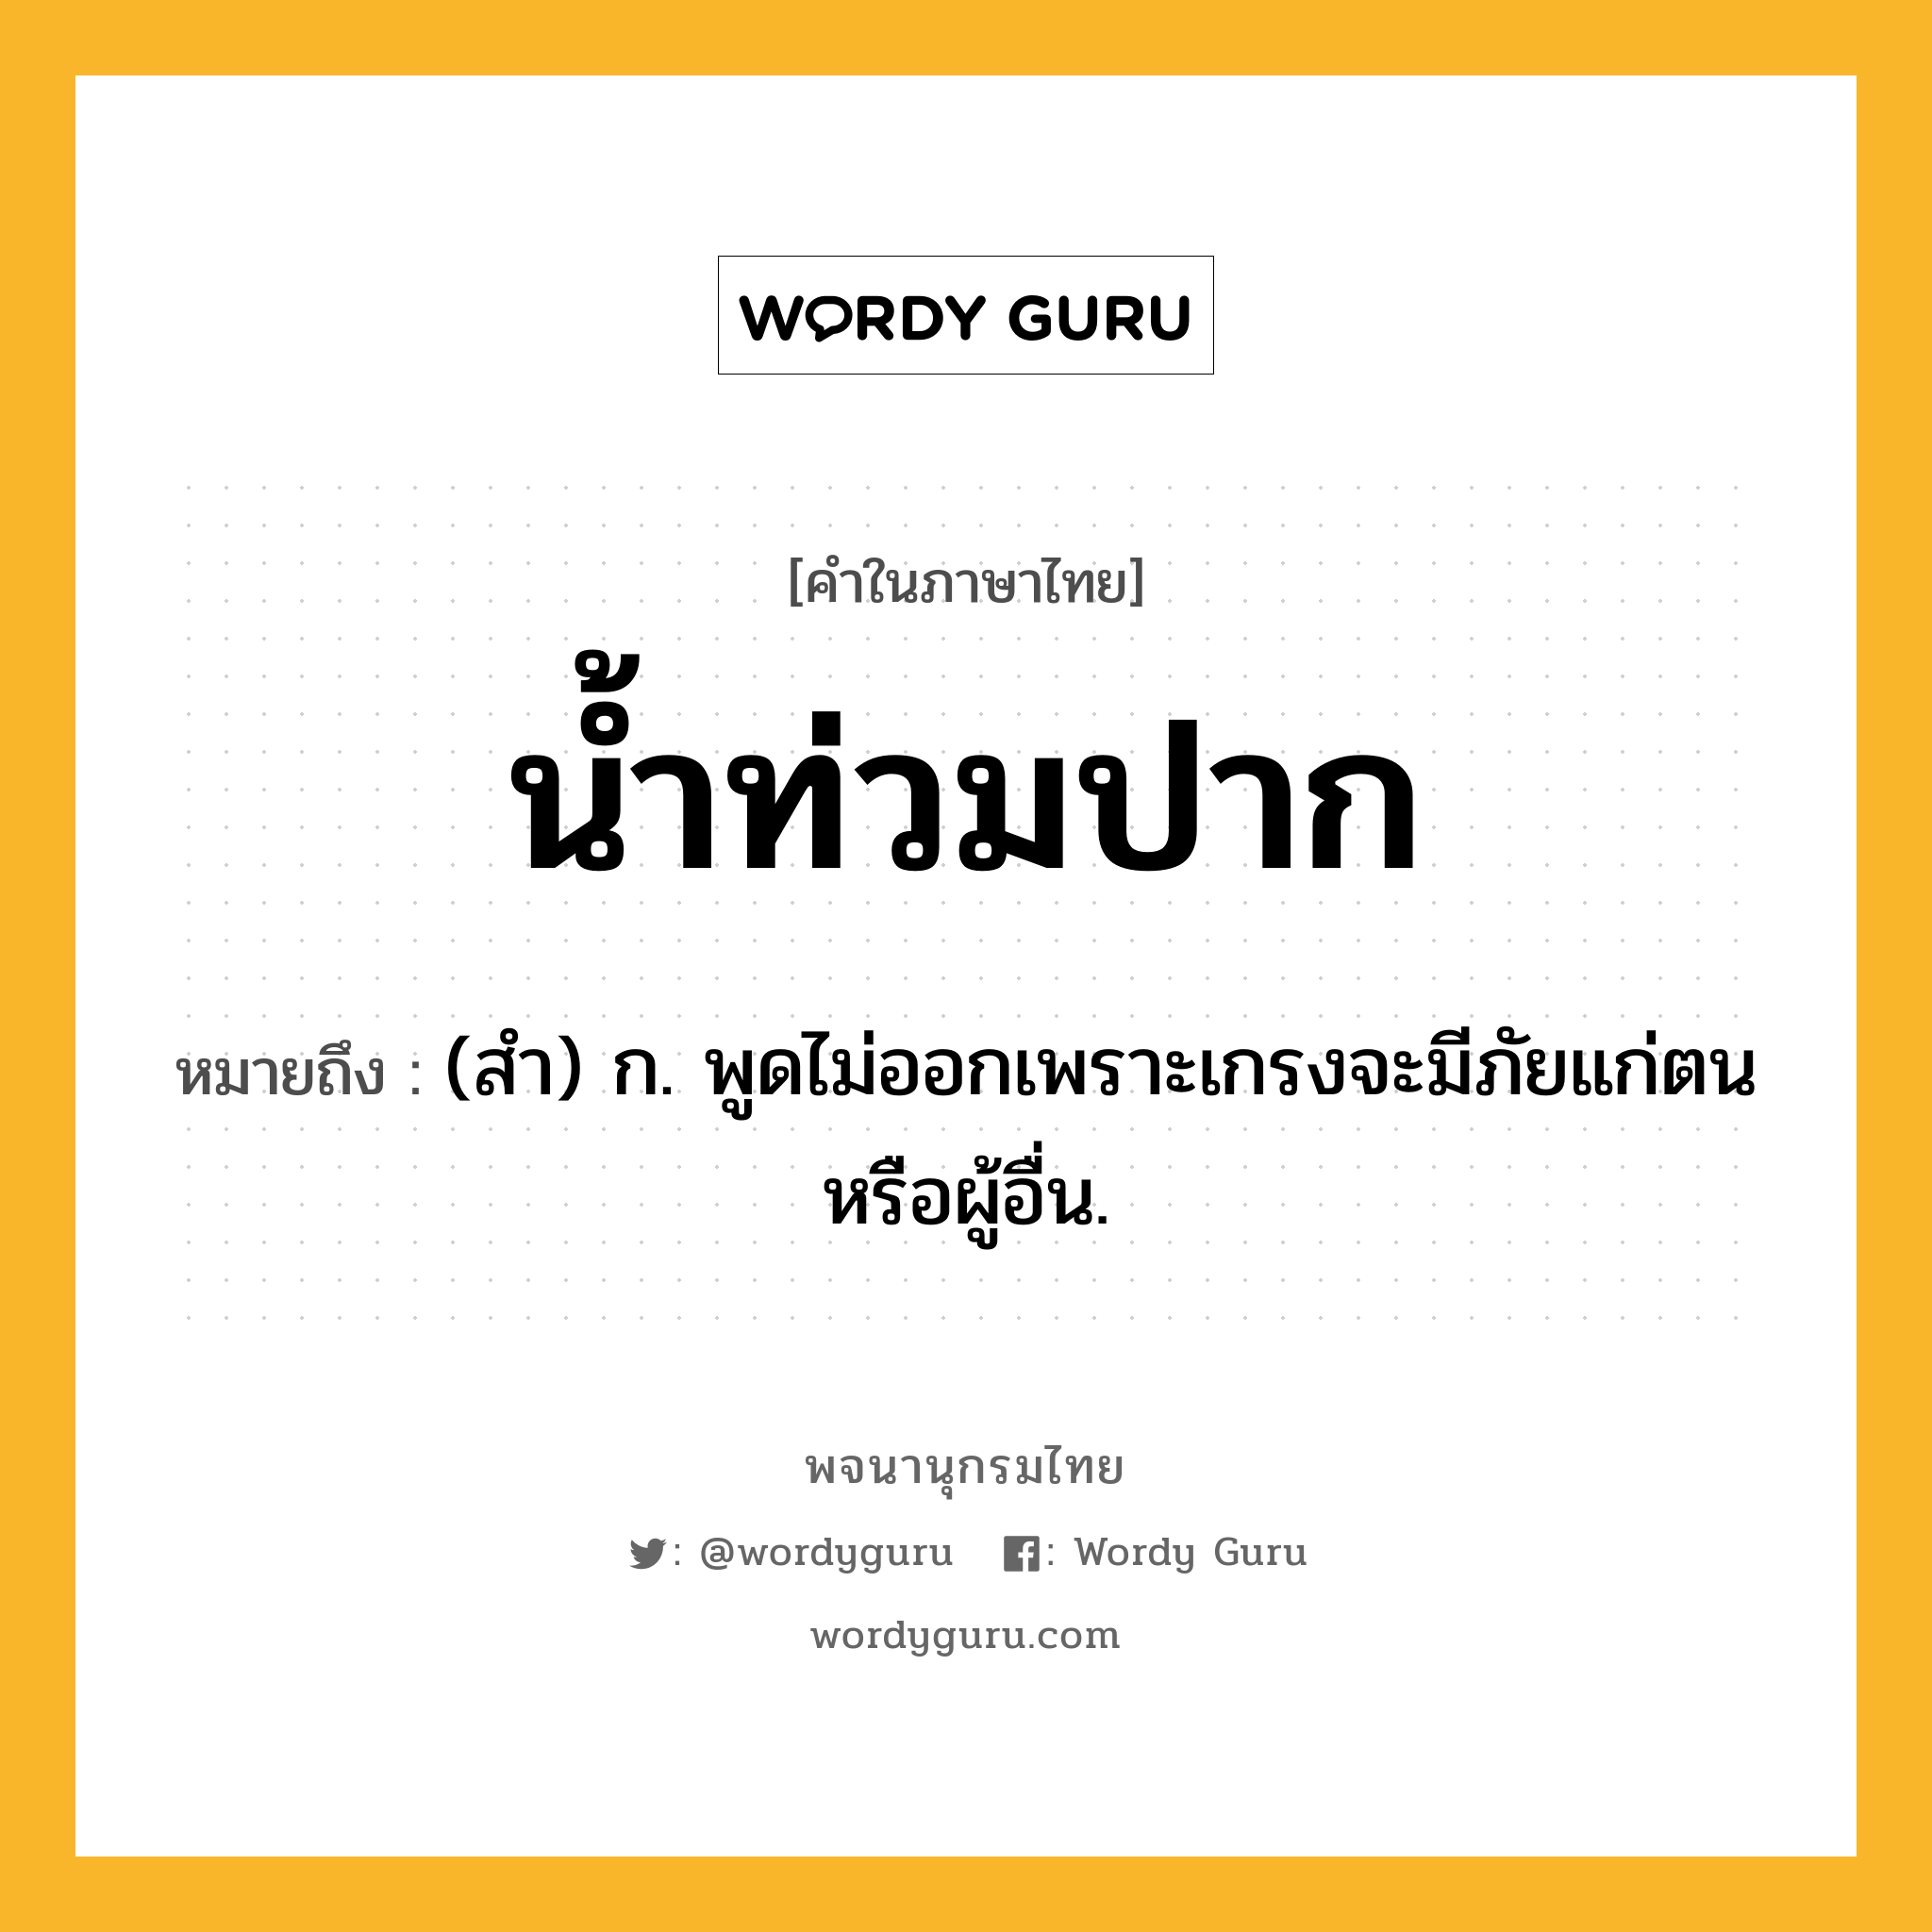 น้ำท่วมปาก ความหมาย หมายถึงอะไร?, คำในภาษาไทย น้ำท่วมปาก หมายถึง (สํา) ก. พูดไม่ออกเพราะเกรงจะมีภัยแก่ตนหรือผู้อื่น.